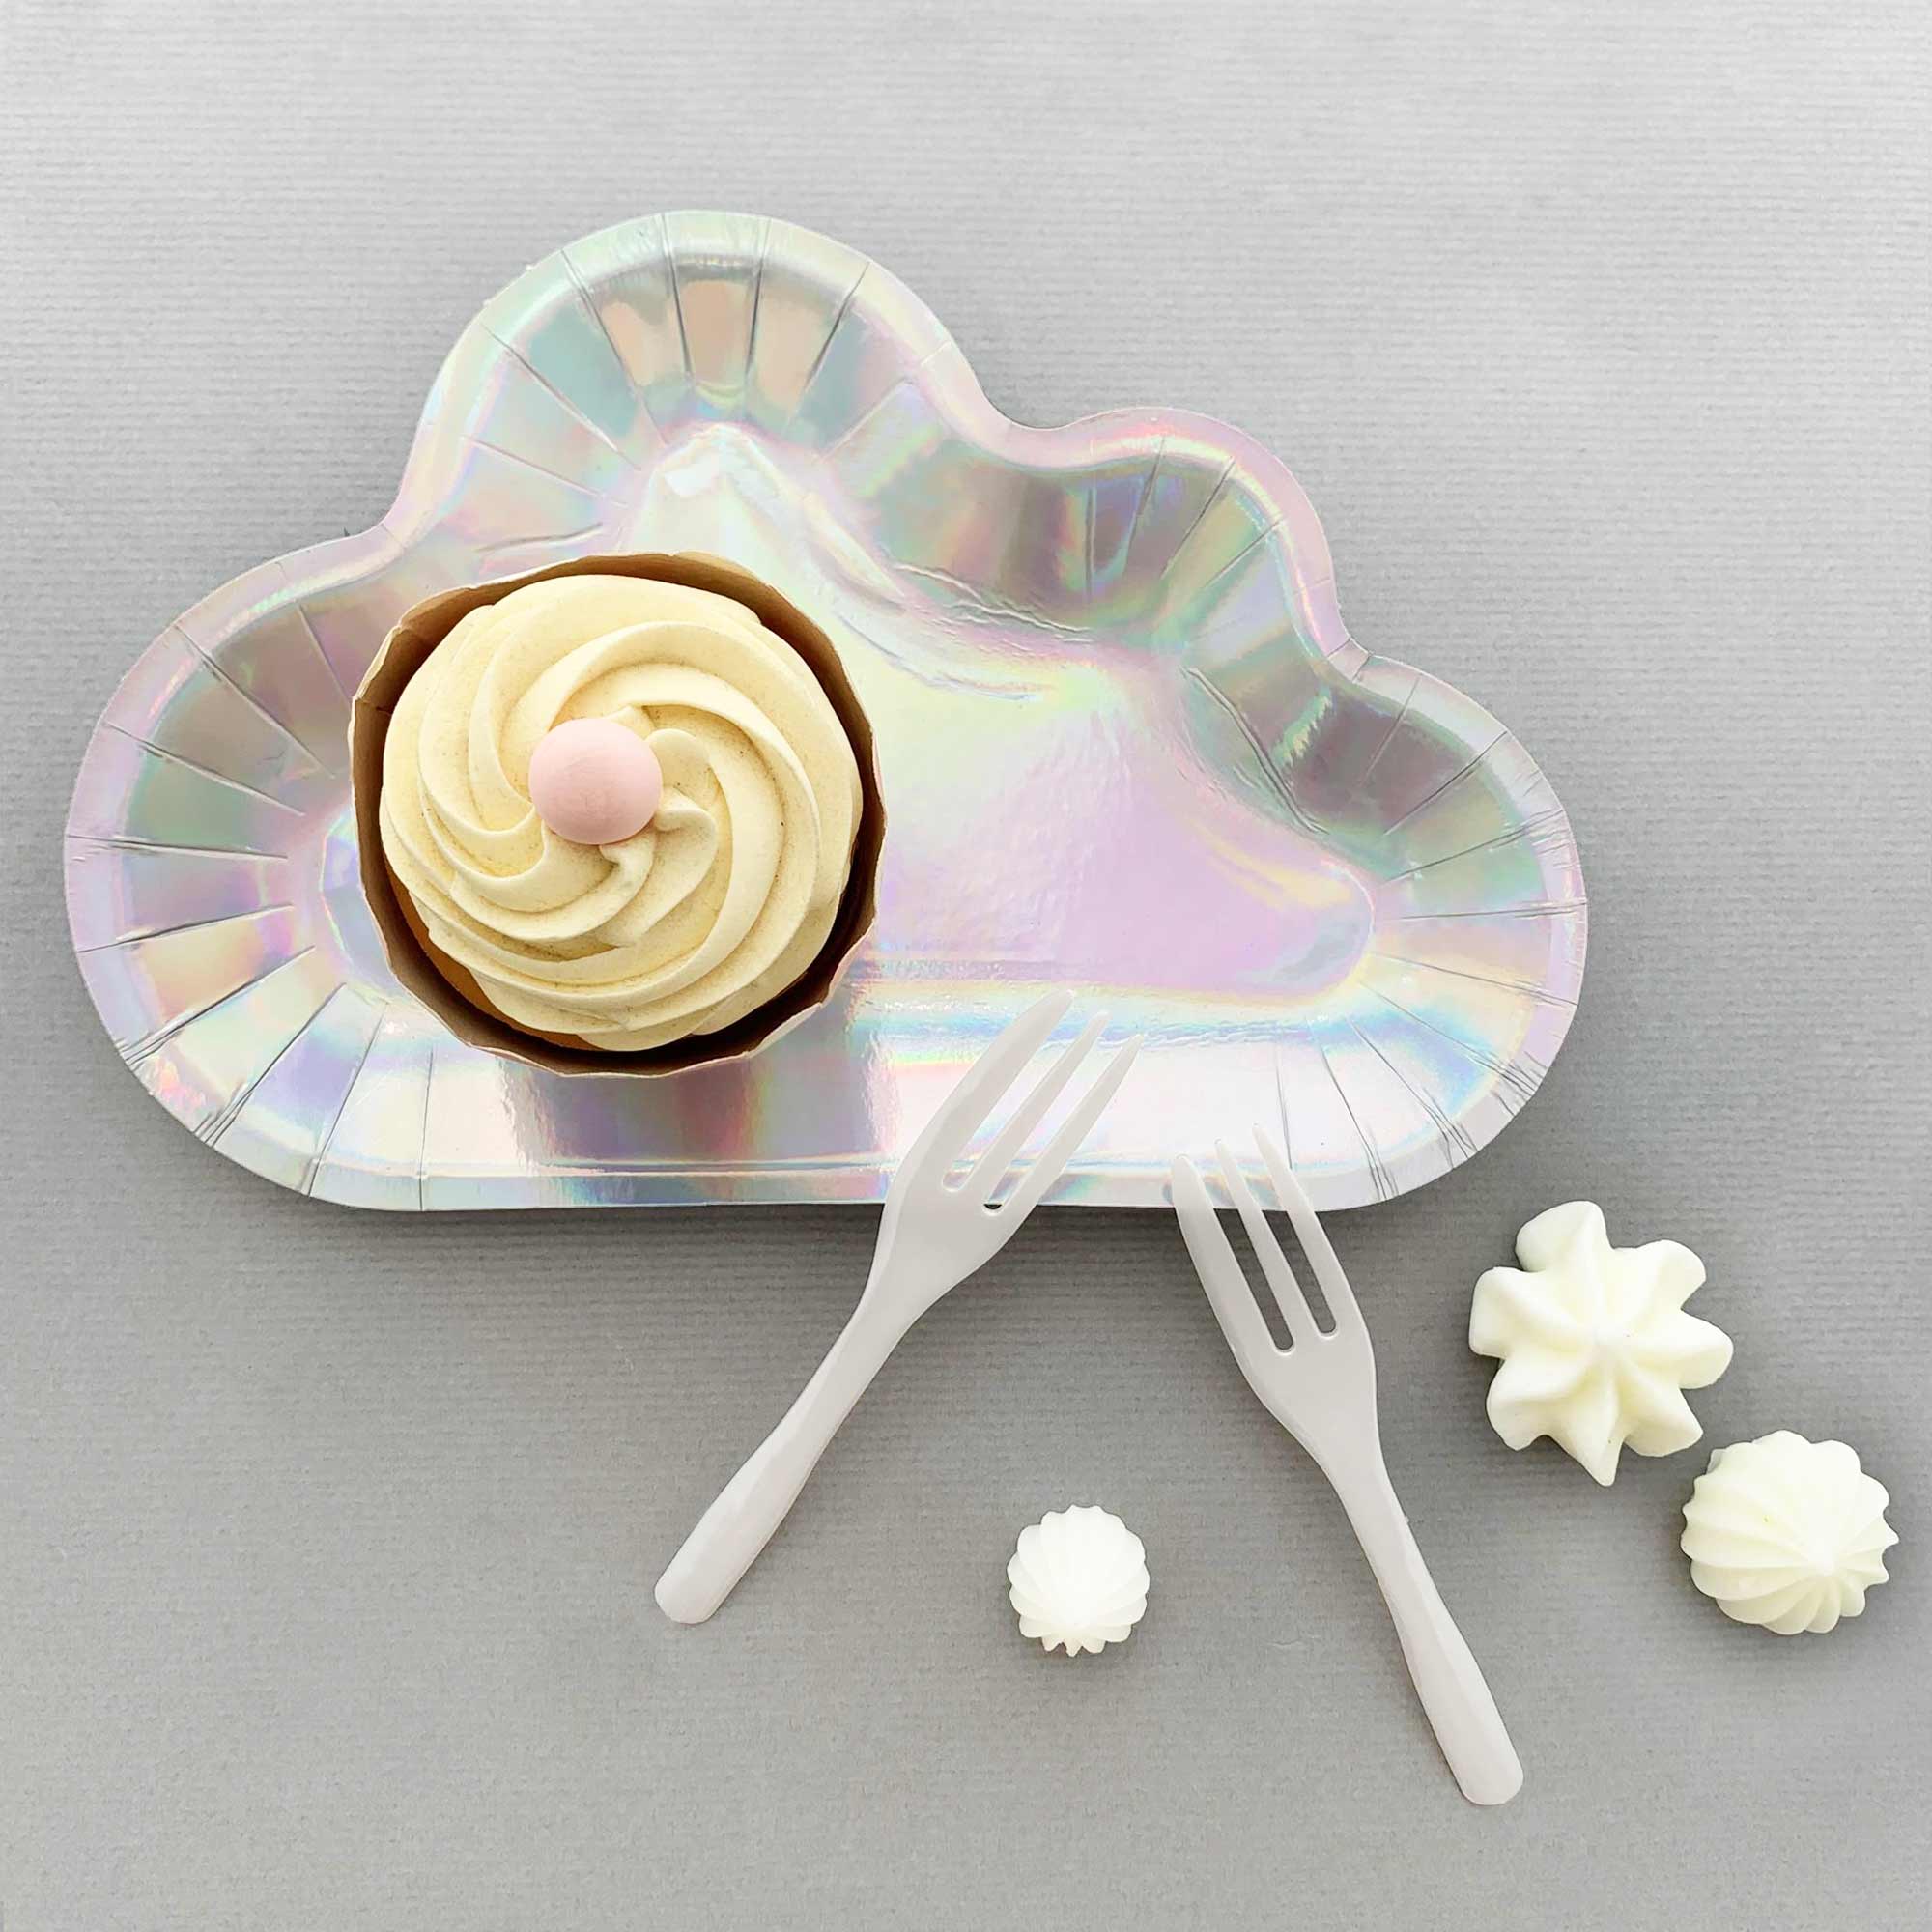 반짝이는 구름 케이크 팬 세트는 하늘 테마 생일 파티에 적합하며, 반짝이는 구름 팬으로 당신의 식탁을 빛내보세요.